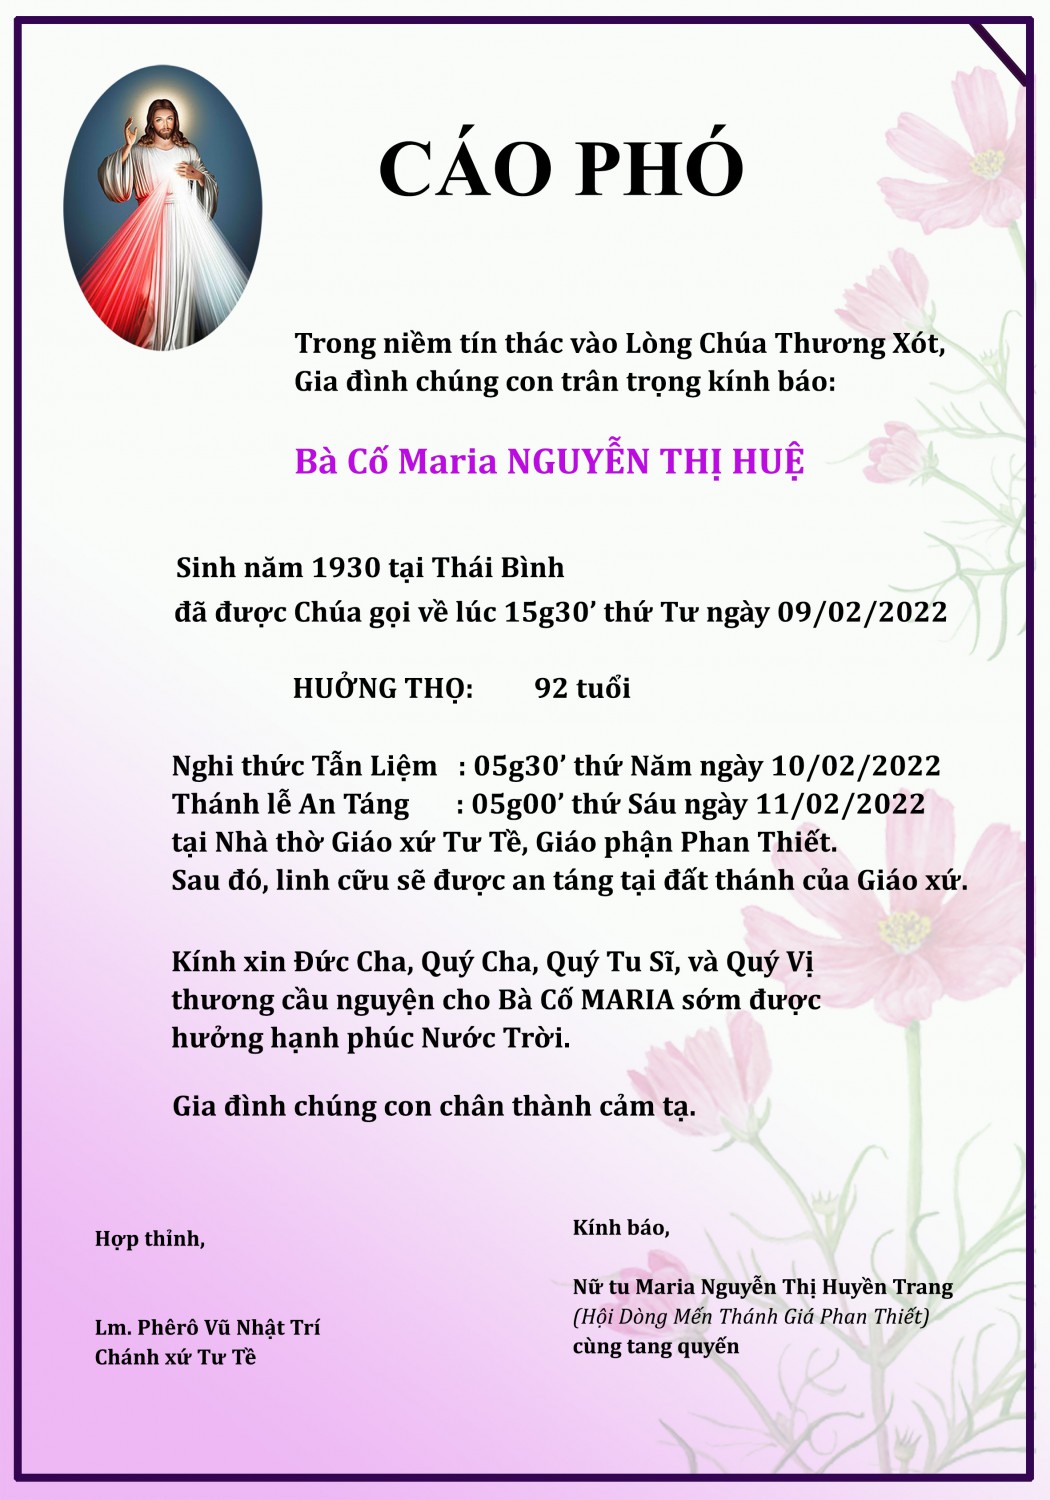 Bà Cô Maria Nguyễn Thị Huệ